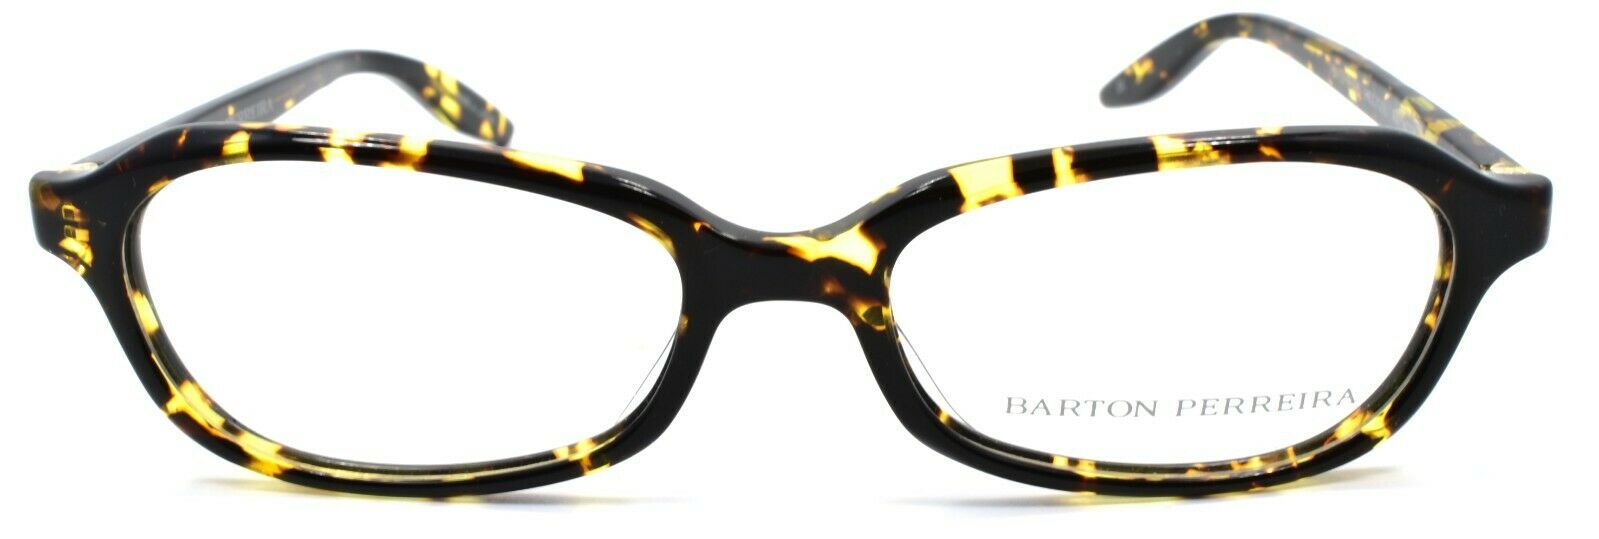 2-Barton Perreira Raynette HEC/BOL Women's Glasses Frames 51-17-135 Heroine Chic-672263039181-IKSpecs